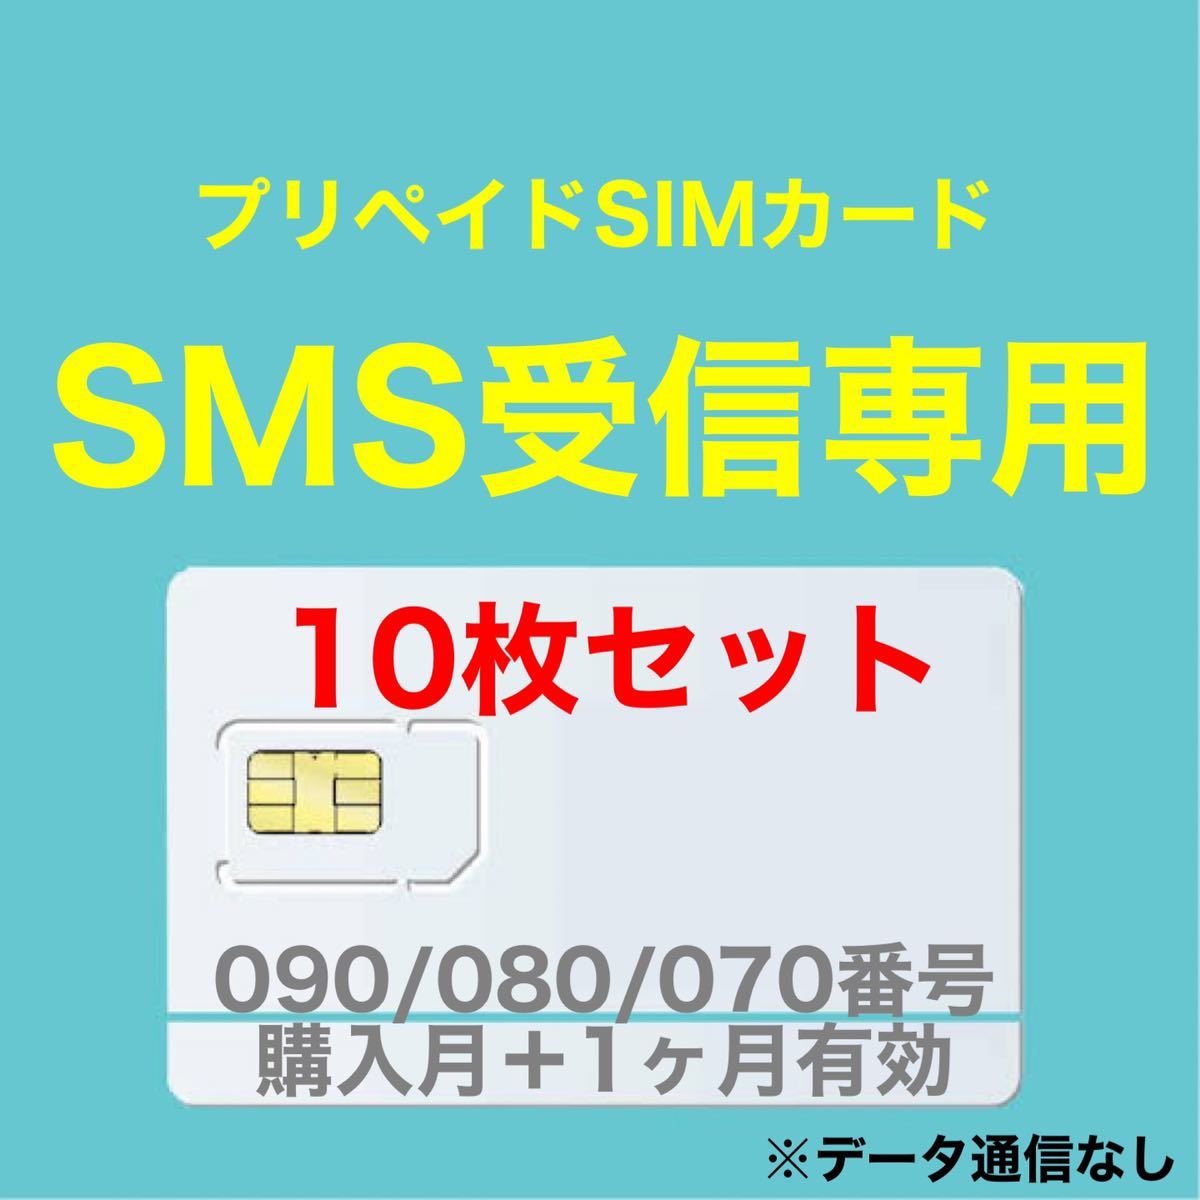 【10枚セット】プリペイドSIMカード SMS受信可能 SMS受信ができる090/080/070番号使用